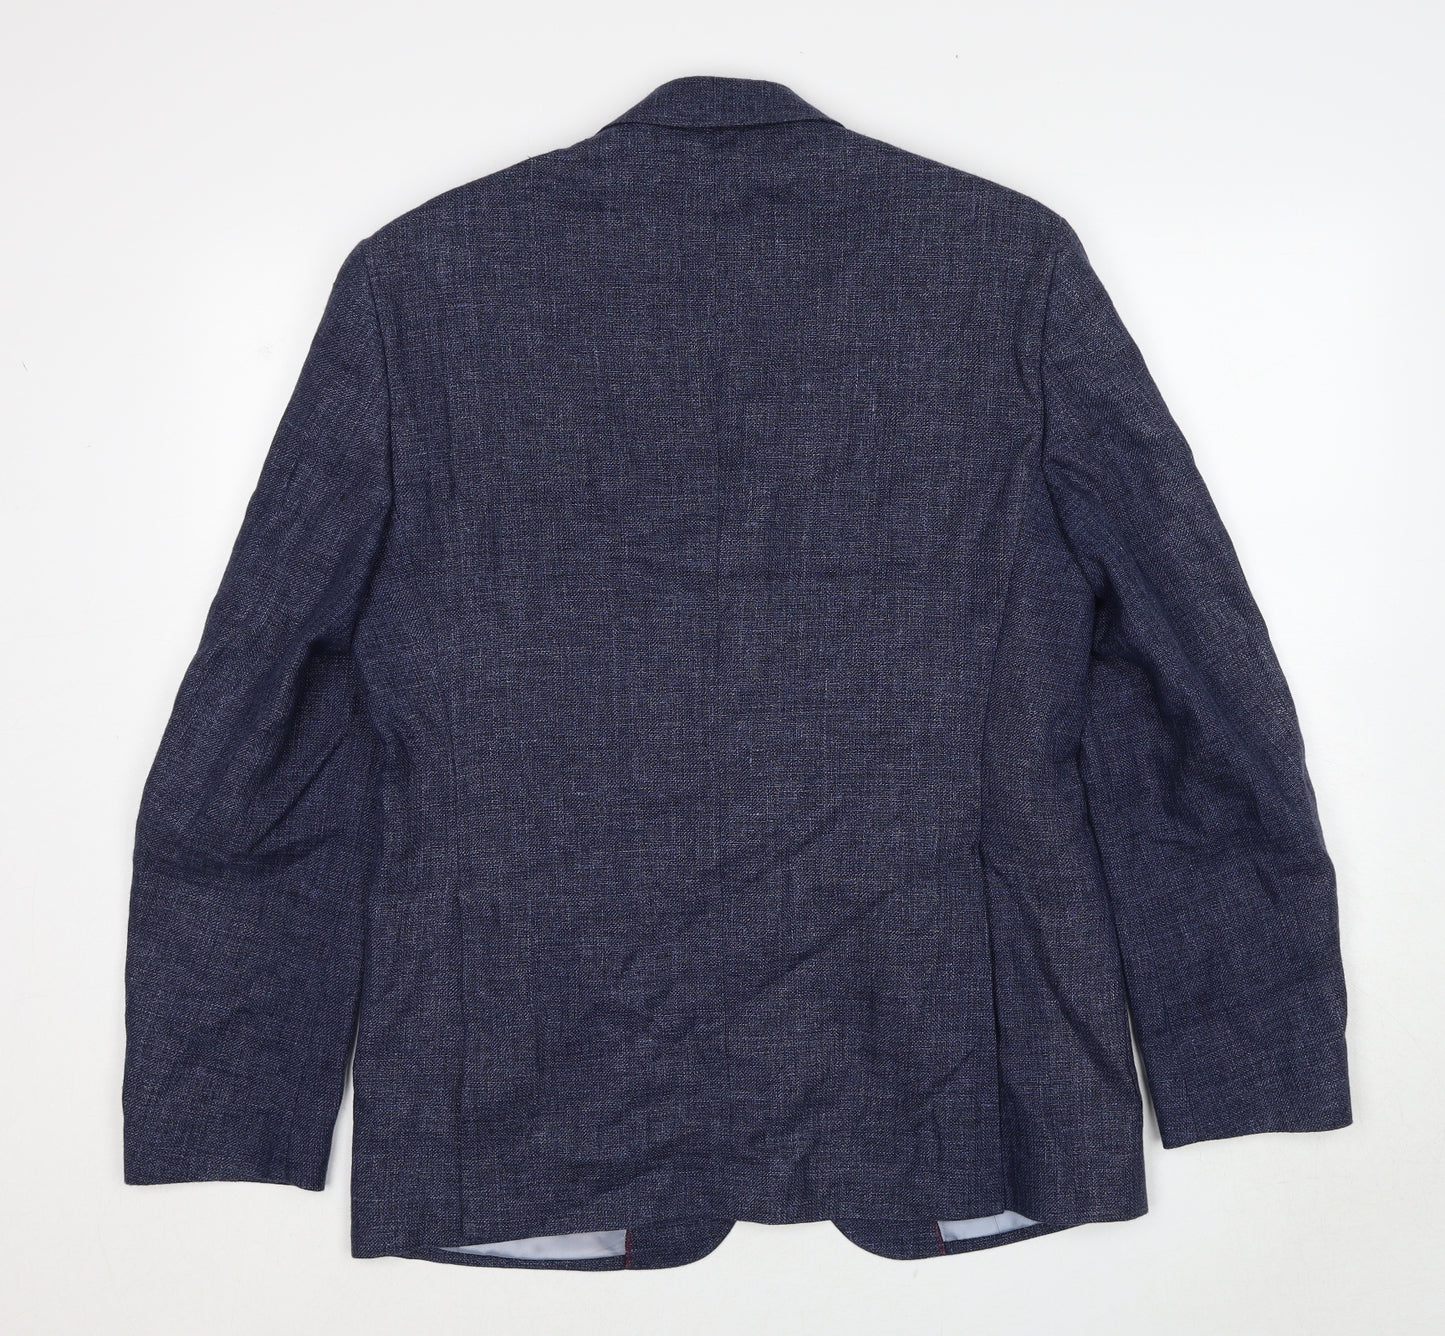 Marks and Spencer Mens Blue Geometric Linen Jacket Suit Jacket Size 46 Regular